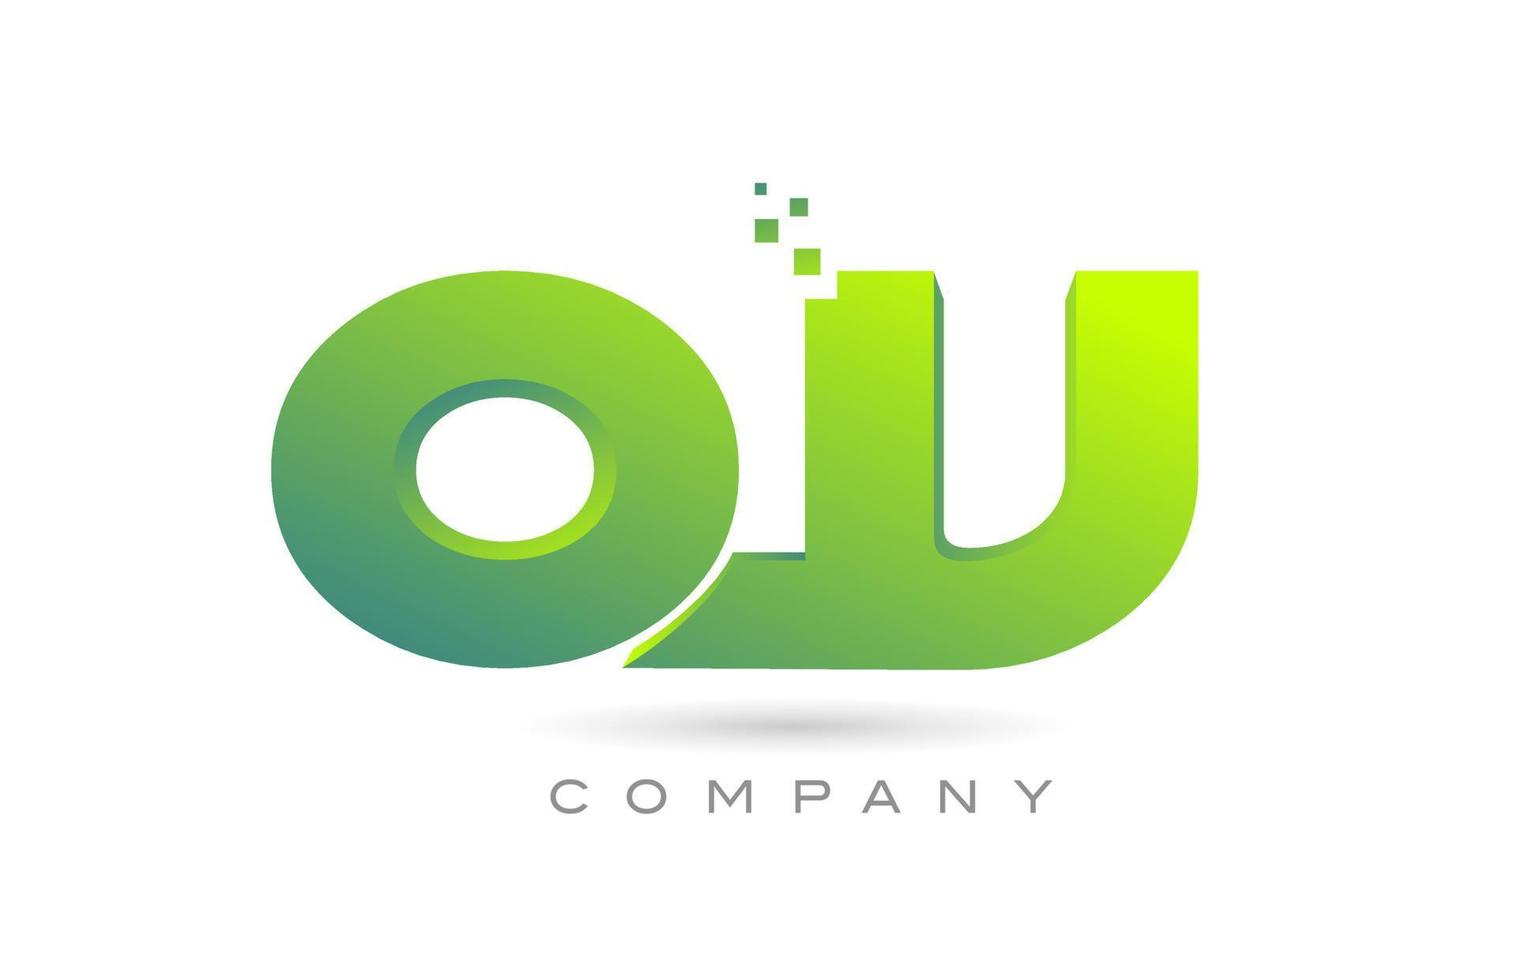 beigetretenes qv-Alphabet-Buchstaben-Logo-Symbol-Kombinationsdesign mit Punkten und grüner Farbe. kreative Vorlage für Unternehmen und Unternehmen vektor